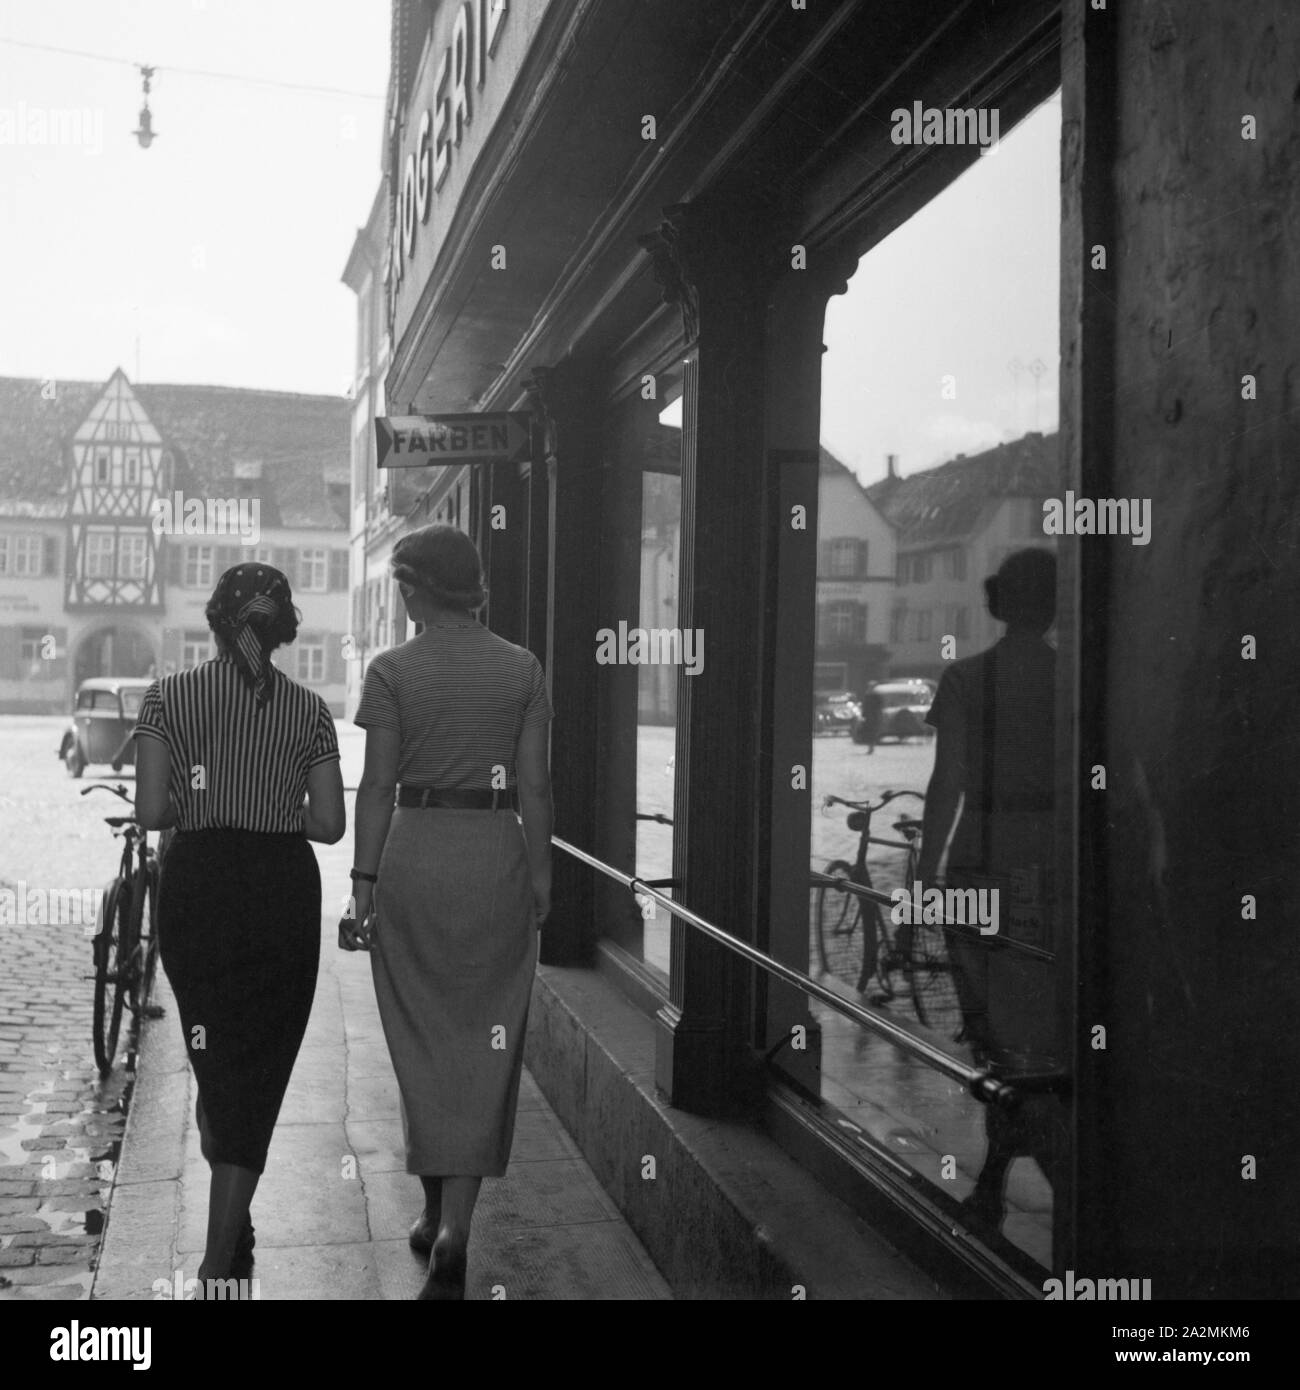 Zwei Frauen gehen am Schaufenster einer Drogerie vorbei, Deutschland 1930er Jahre. Two women passing the shop window of a chemist, Germany 1930s. Stock Photo